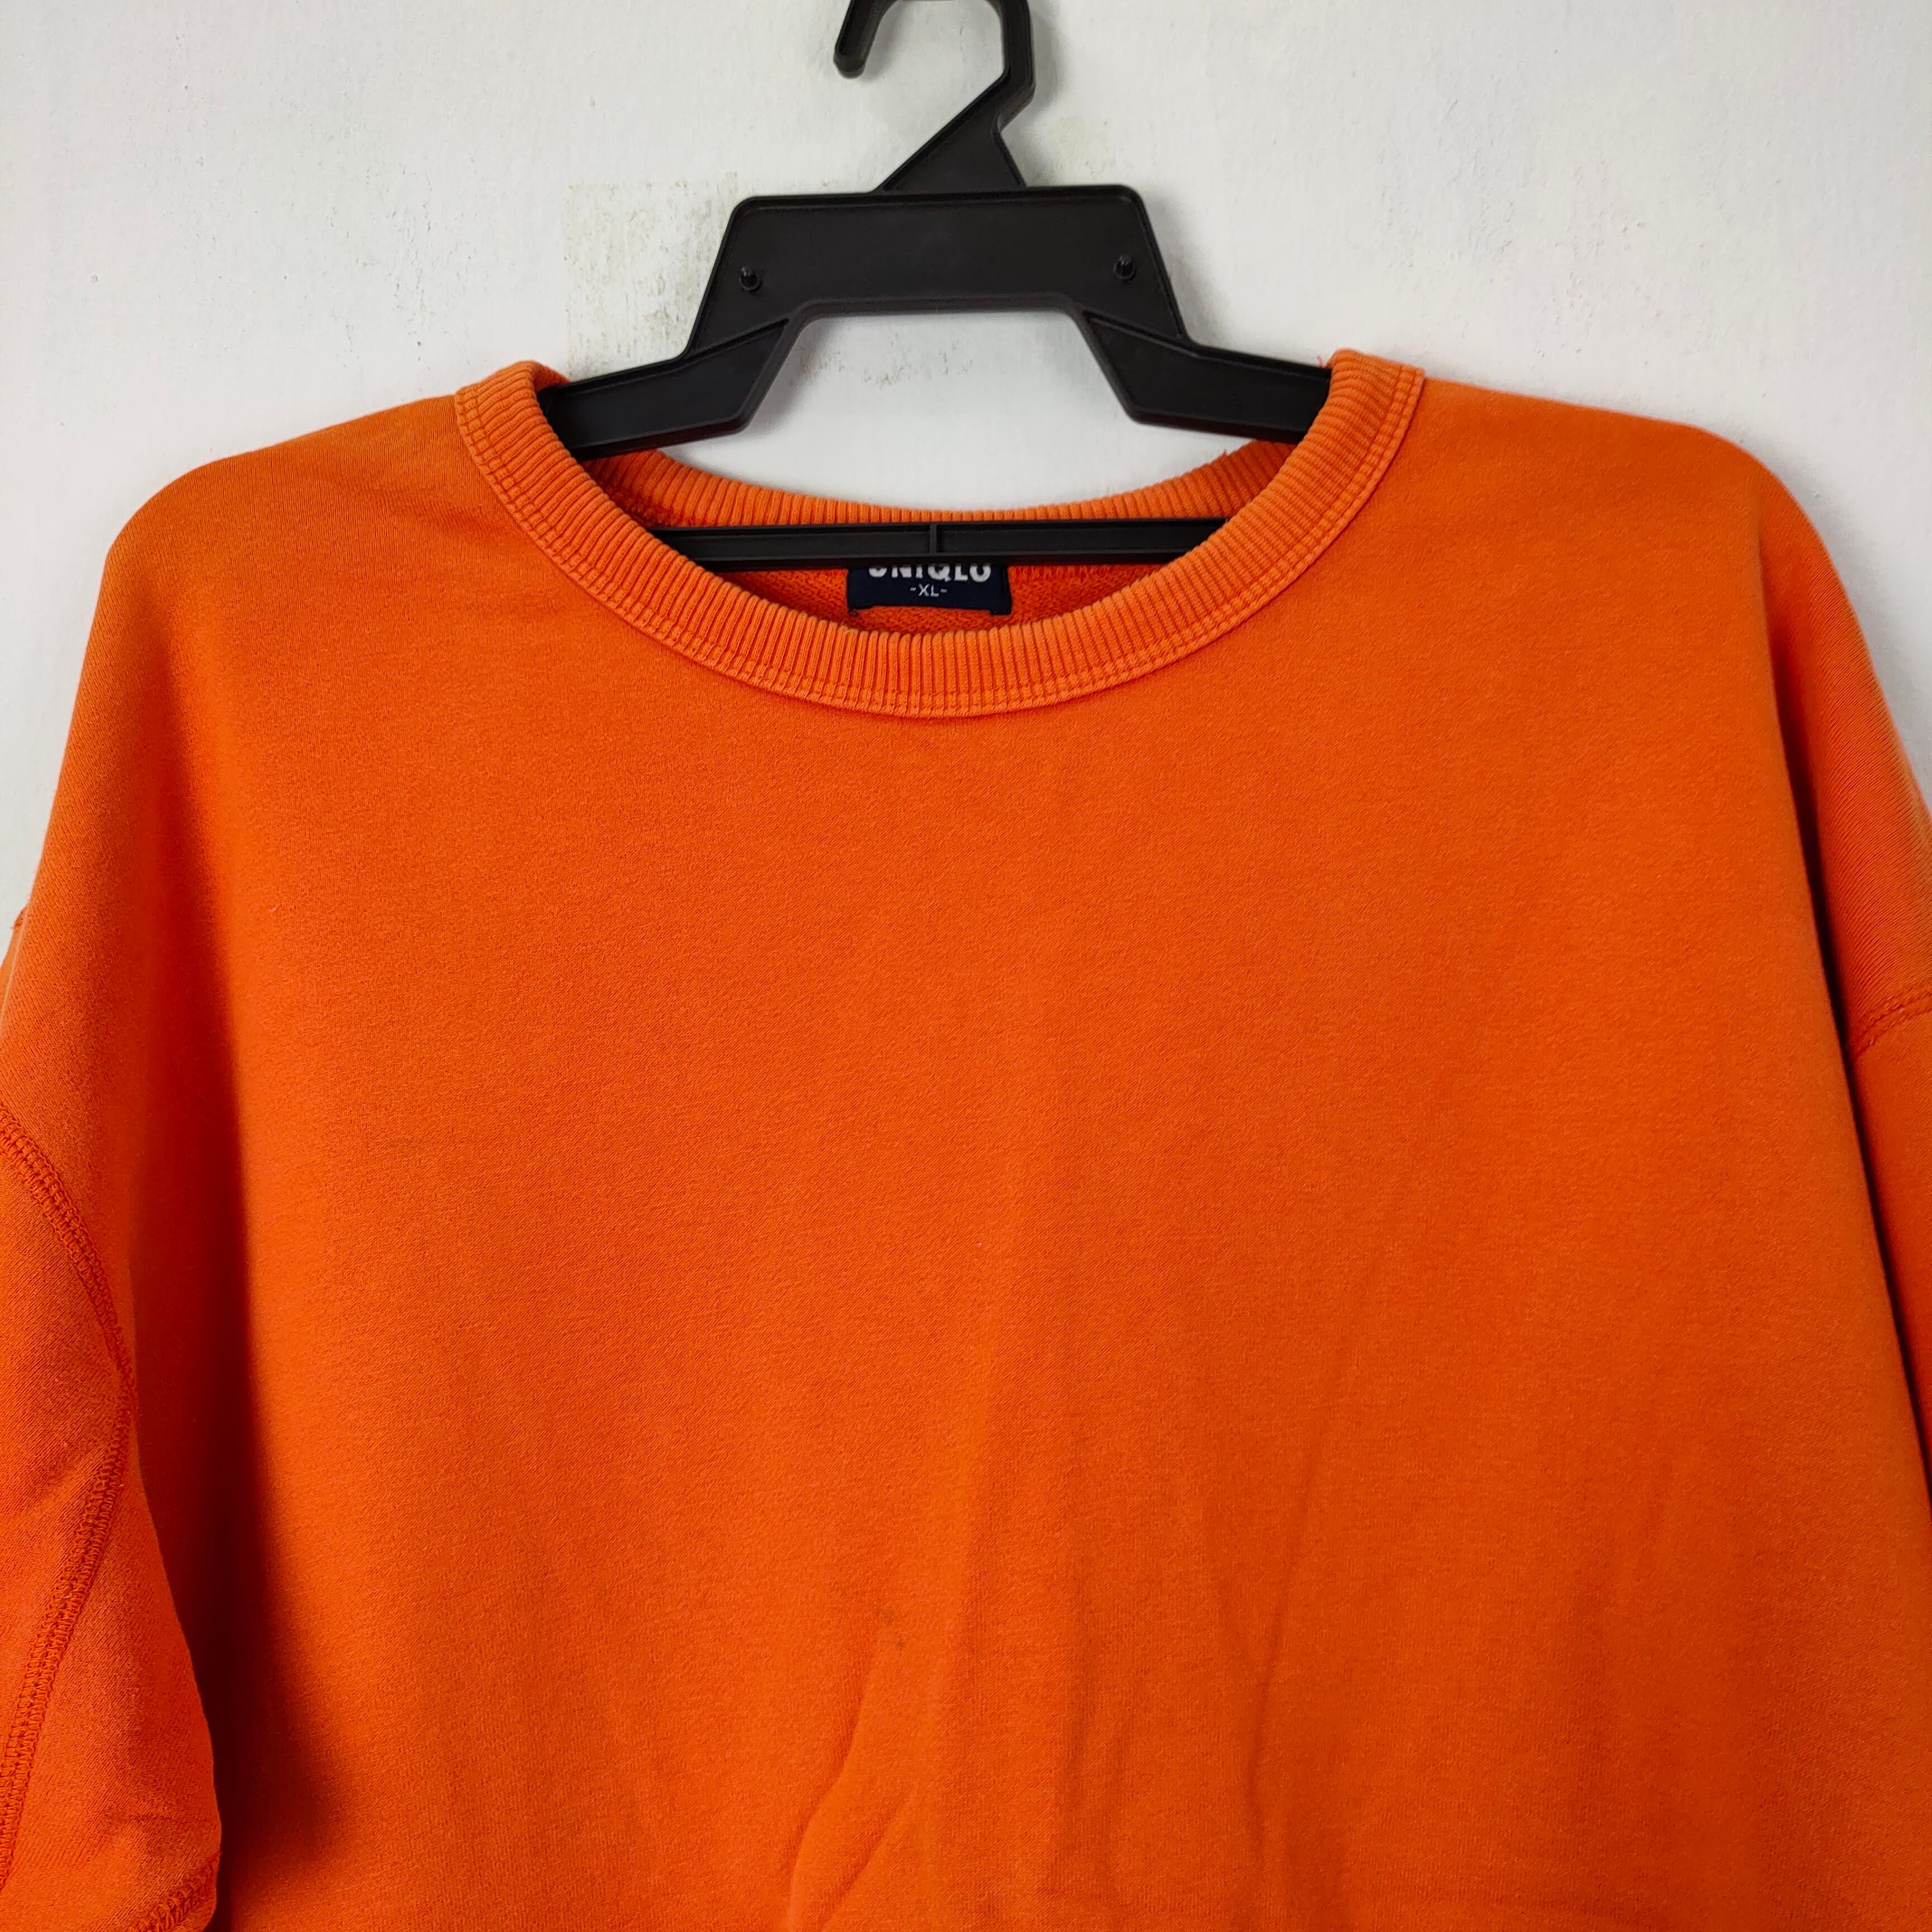 Uniqlo Uniqlo Orange Plain Sweatshirt niqlo Size US XL / EU 56 / 4 - 2 Preview